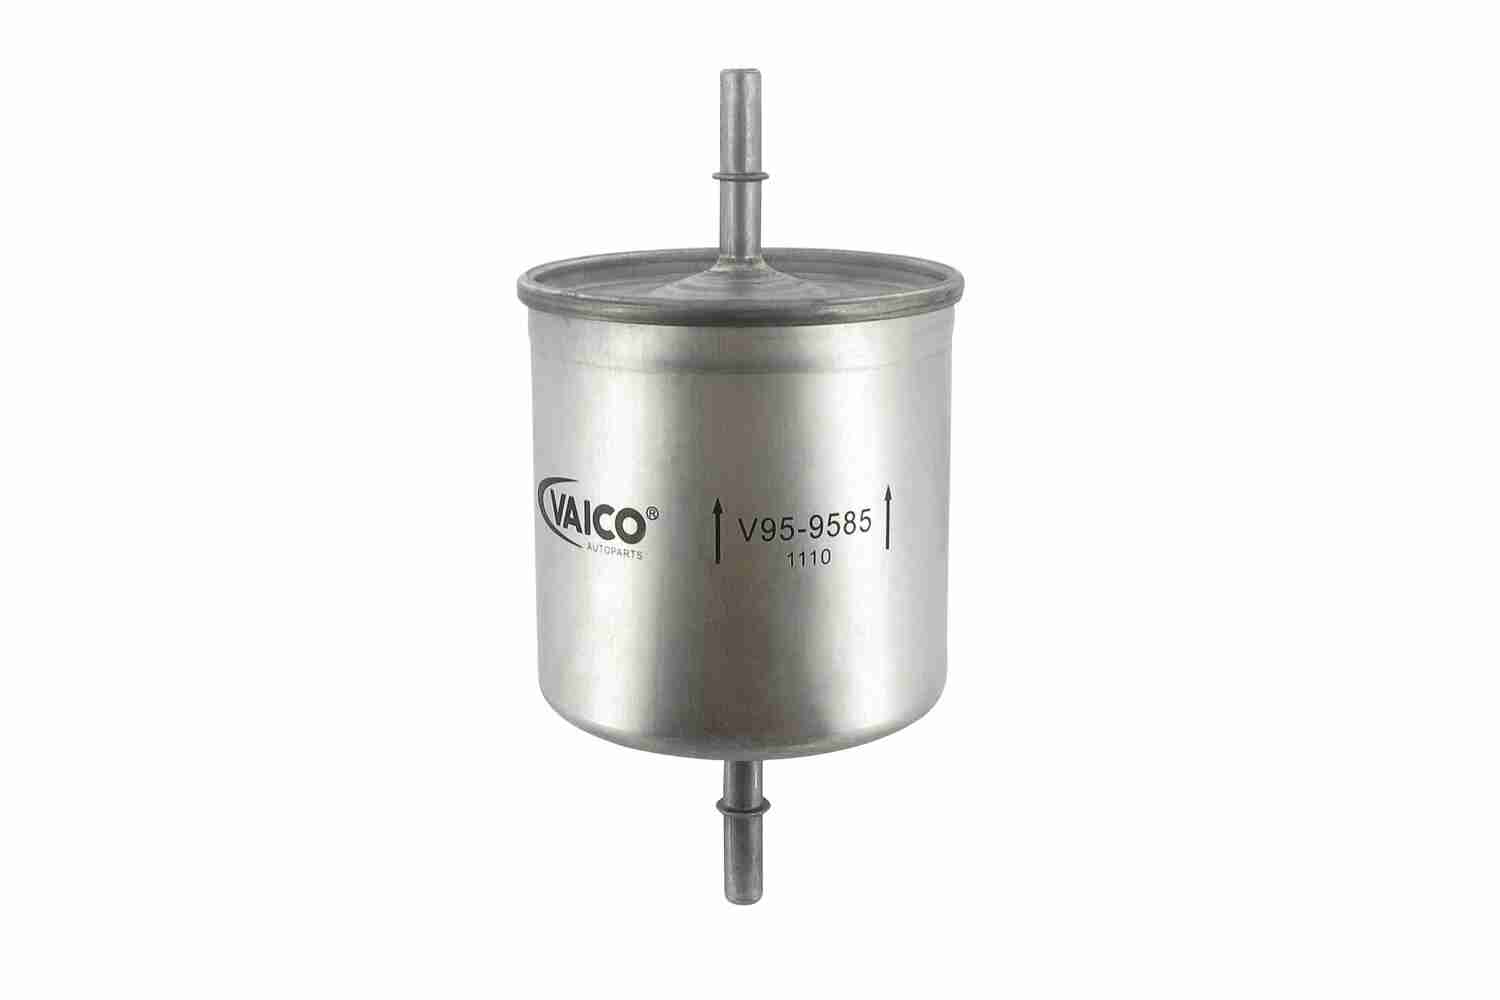 VAICO V95-9585 palivovy filtr